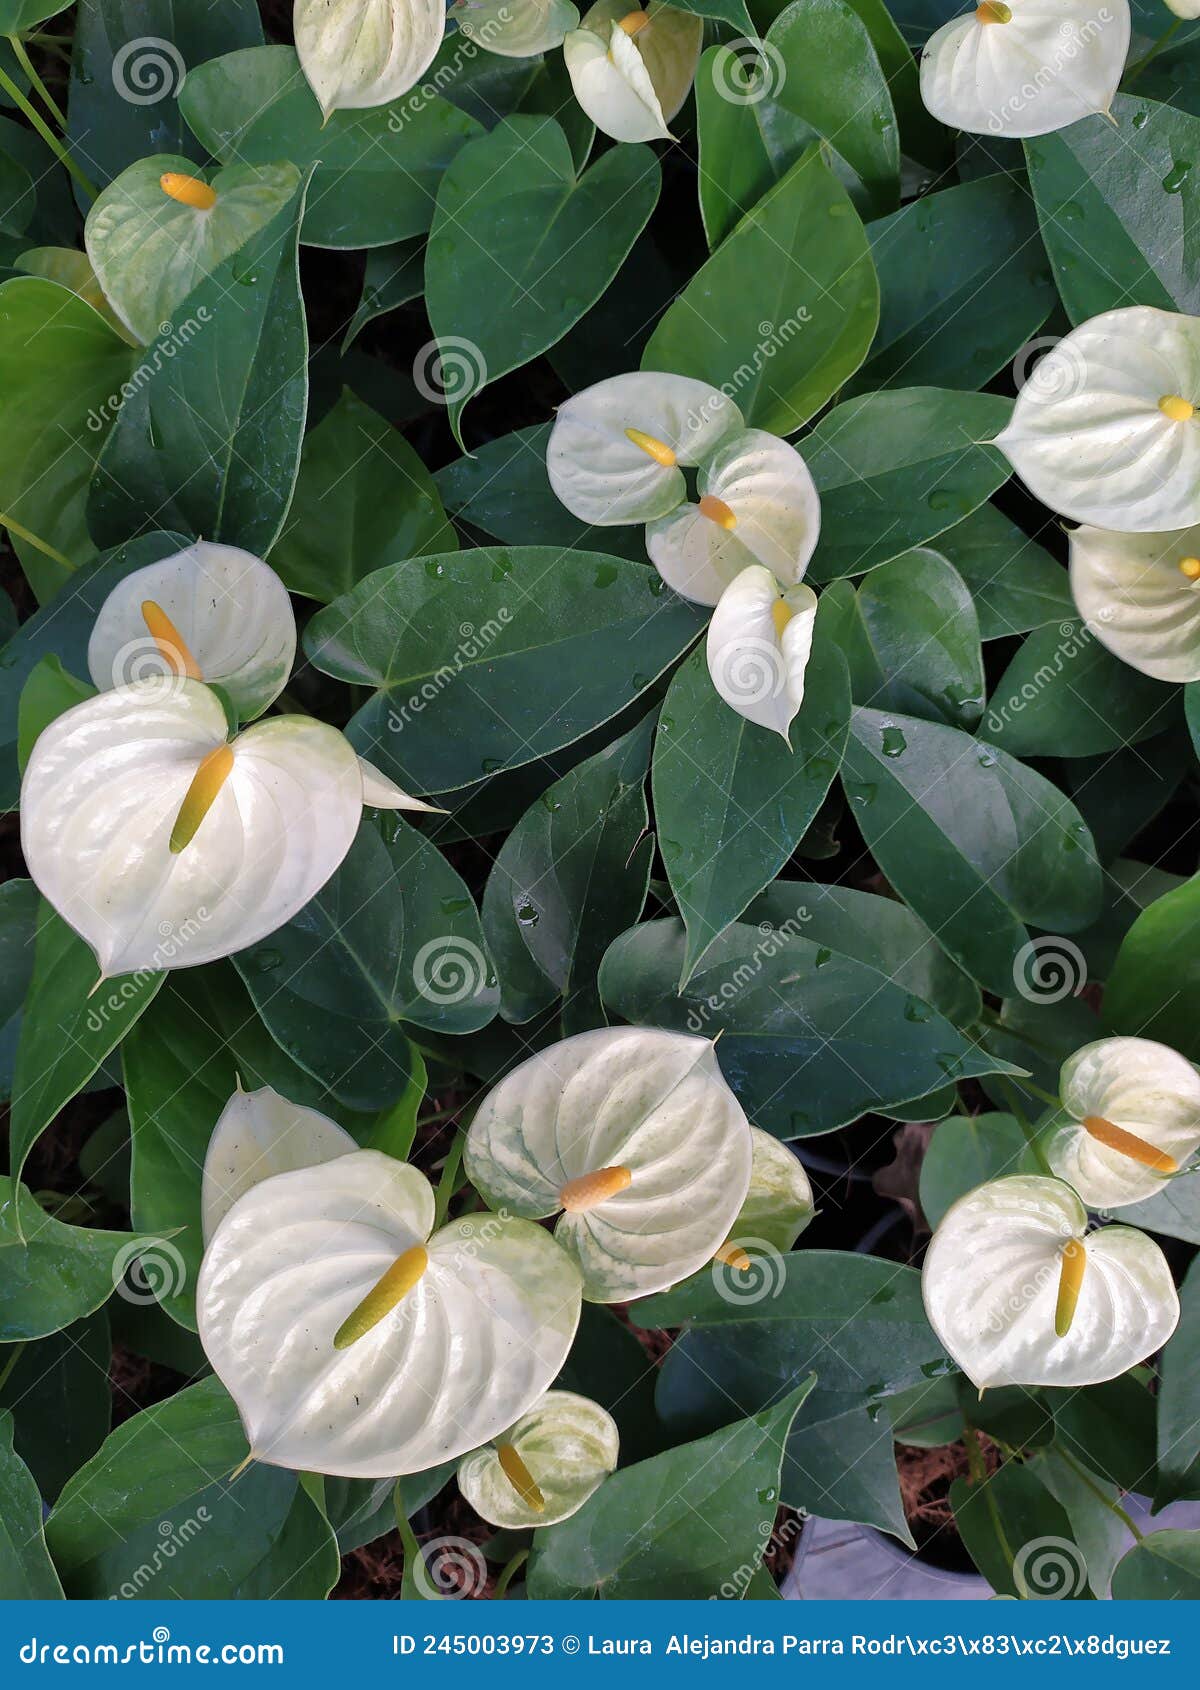 a group of white anthurium flowers with green leaves. un grupo de flores anturianas blancas con hojas verdes